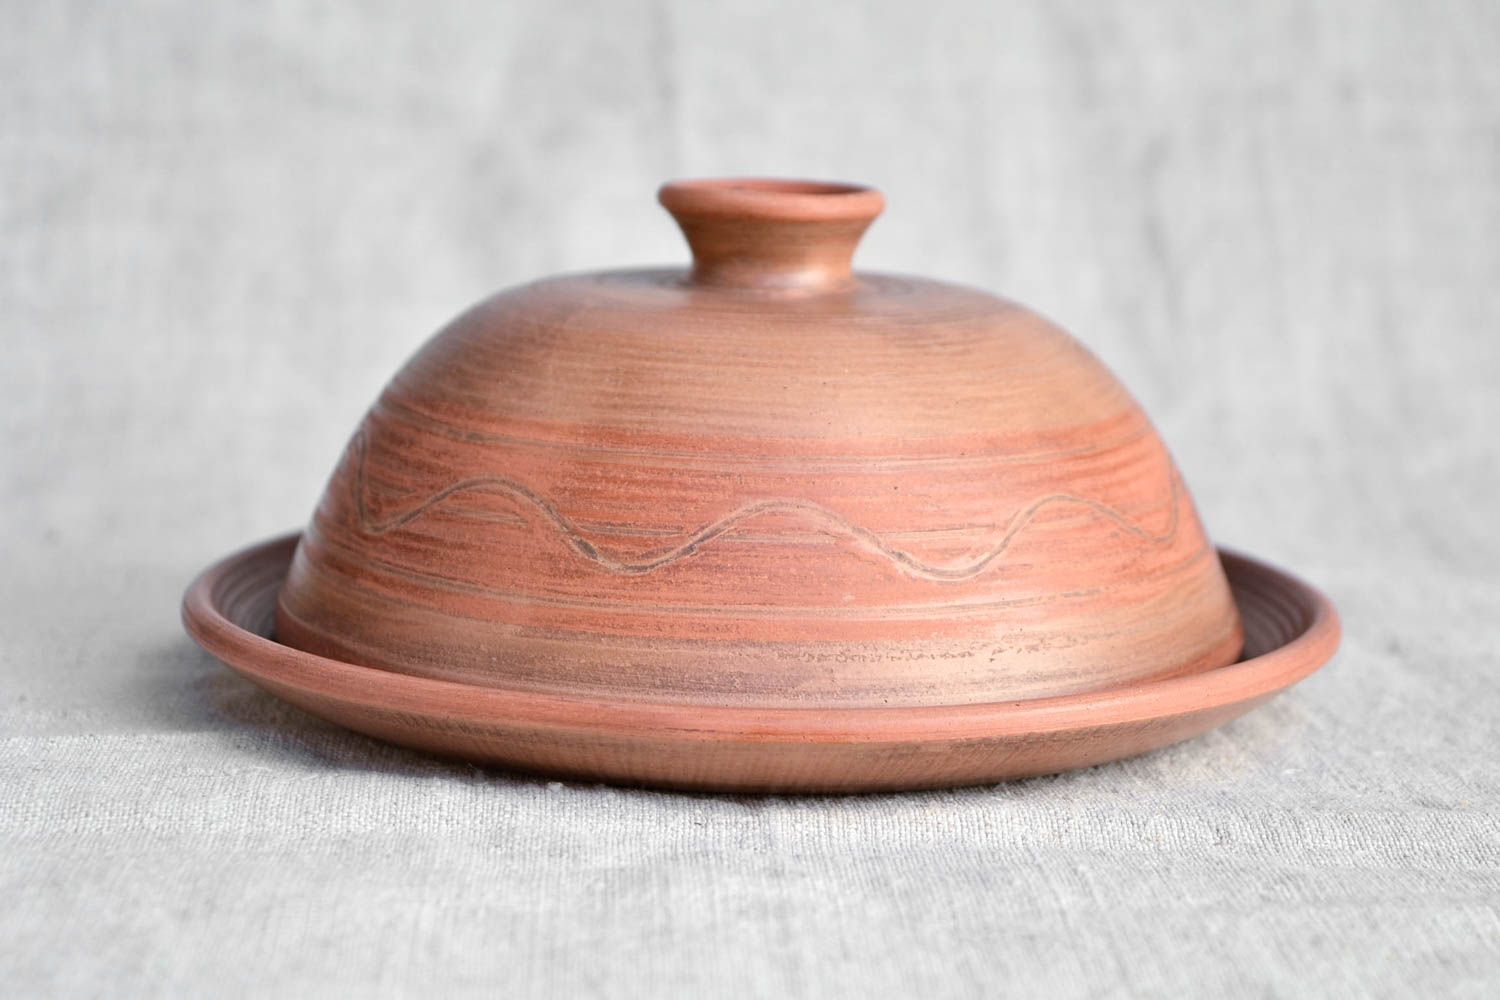 Авторская керамика ручной работы глиняная посуда керамическая тарелка с крышкой фото 4